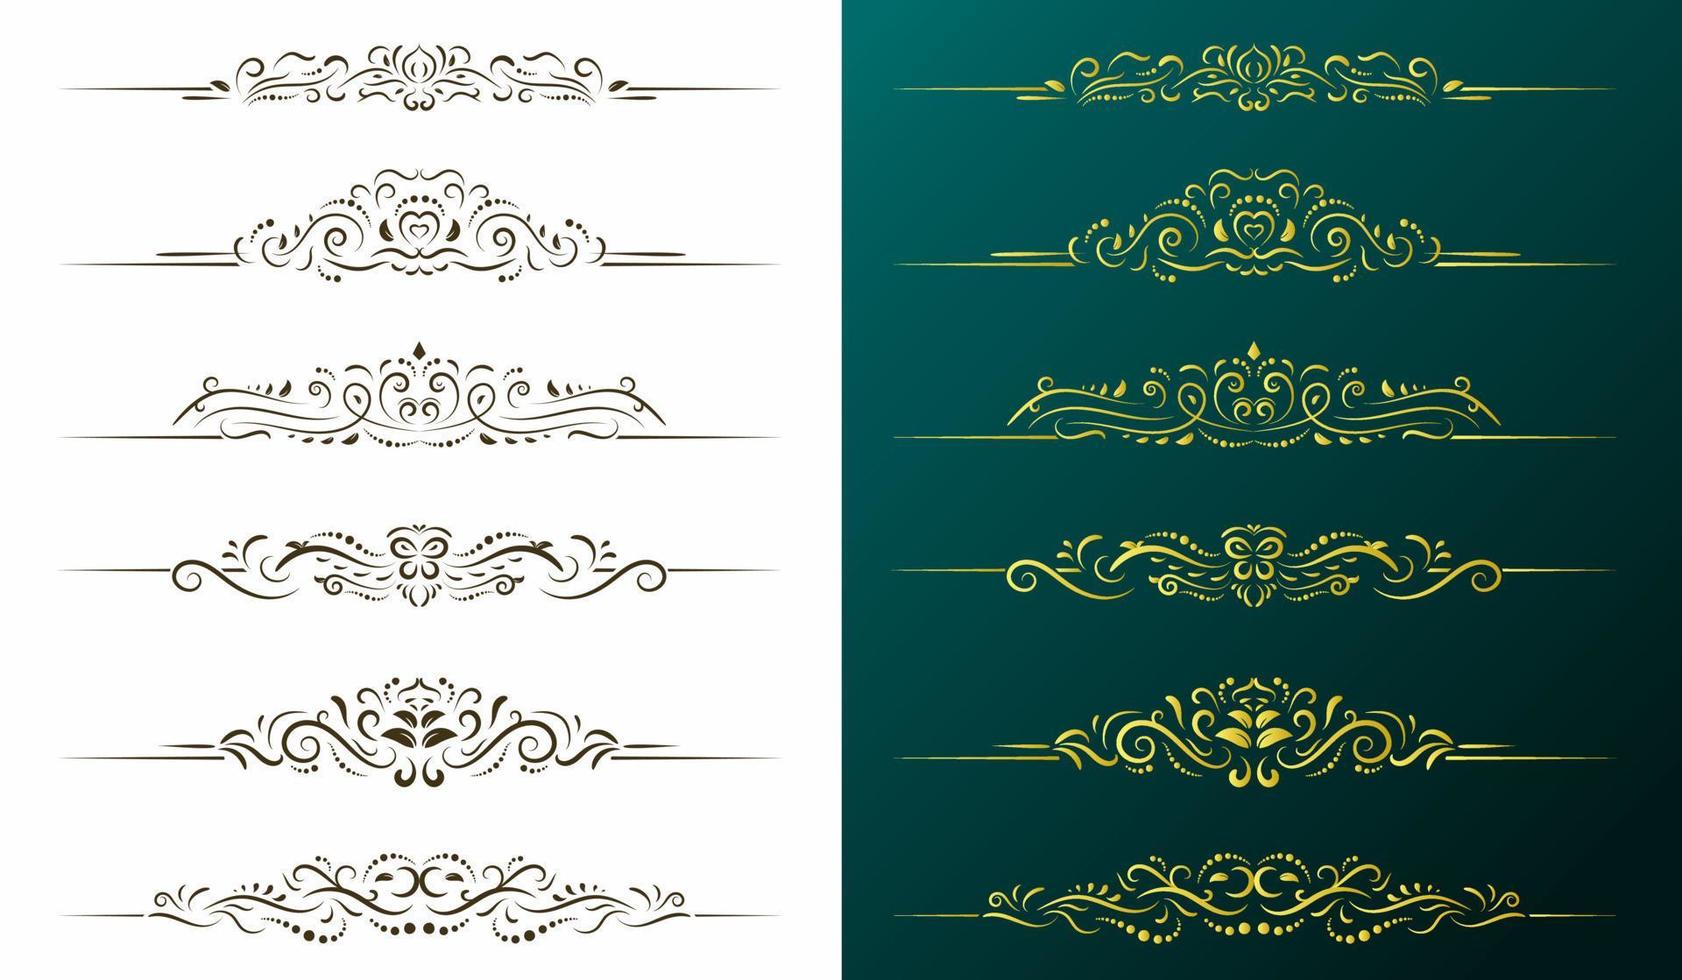 elementos de design caligráfico, divisores de página com ornamento tailandês, página de ornamento divisor vintage, conjunto clássico de borda floral, ilustração vetorial ornamentado. vetor